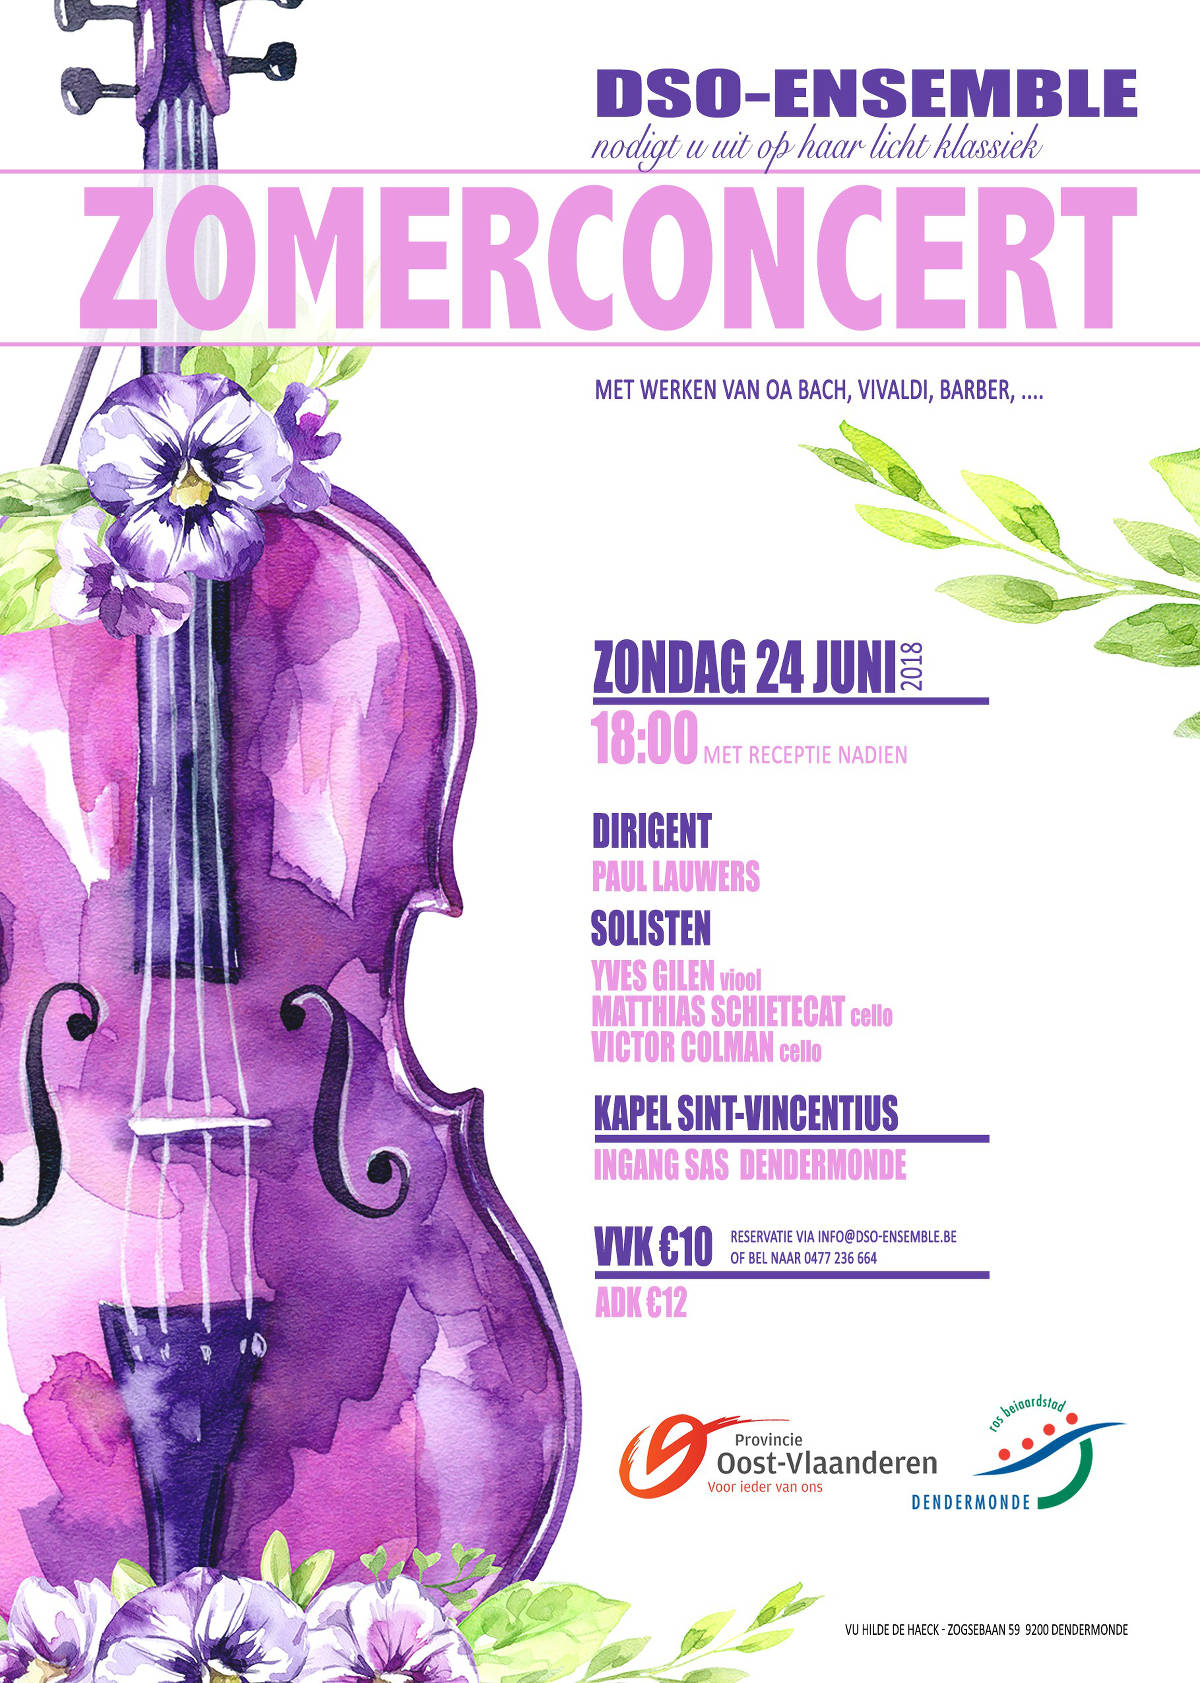 DSO-Ensemble Zomerconcert 2018